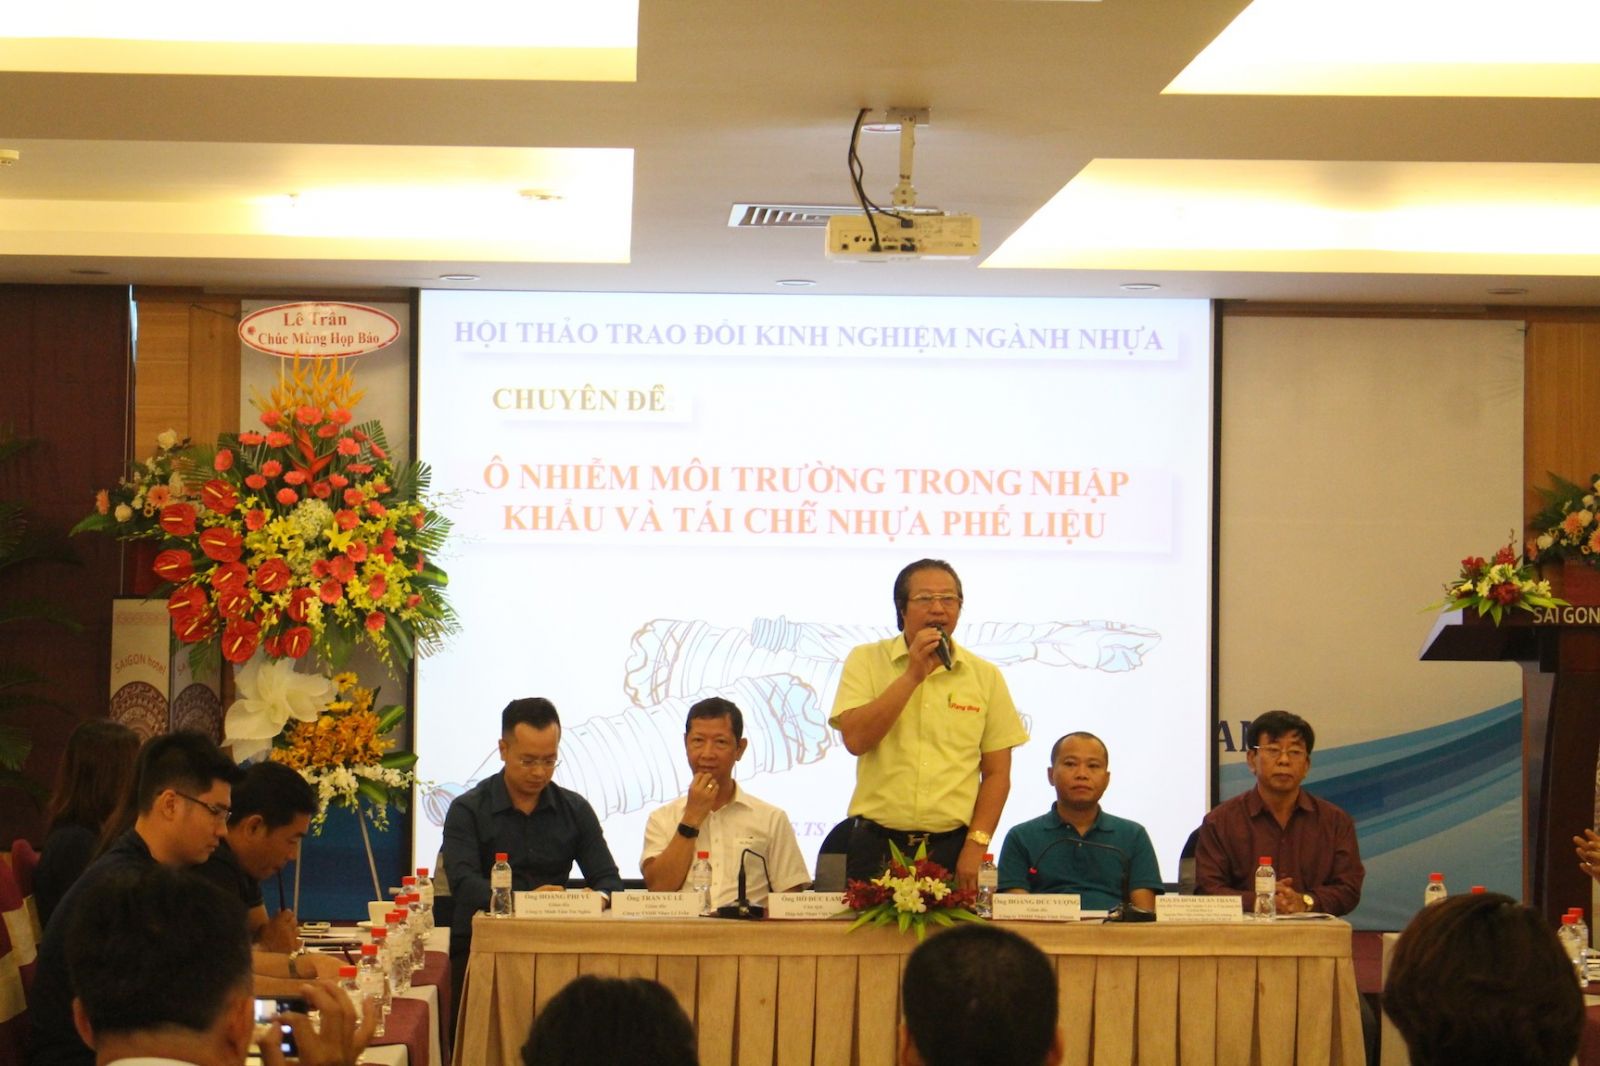 Ông Hồ Đức Lam, Chủ tịch Hiệp hội Nhựa Việt Nam chia sẻ thông tin về ngành nhựa tại một hội thảo chuyên đề mới được tổ chức tại TP.HCM